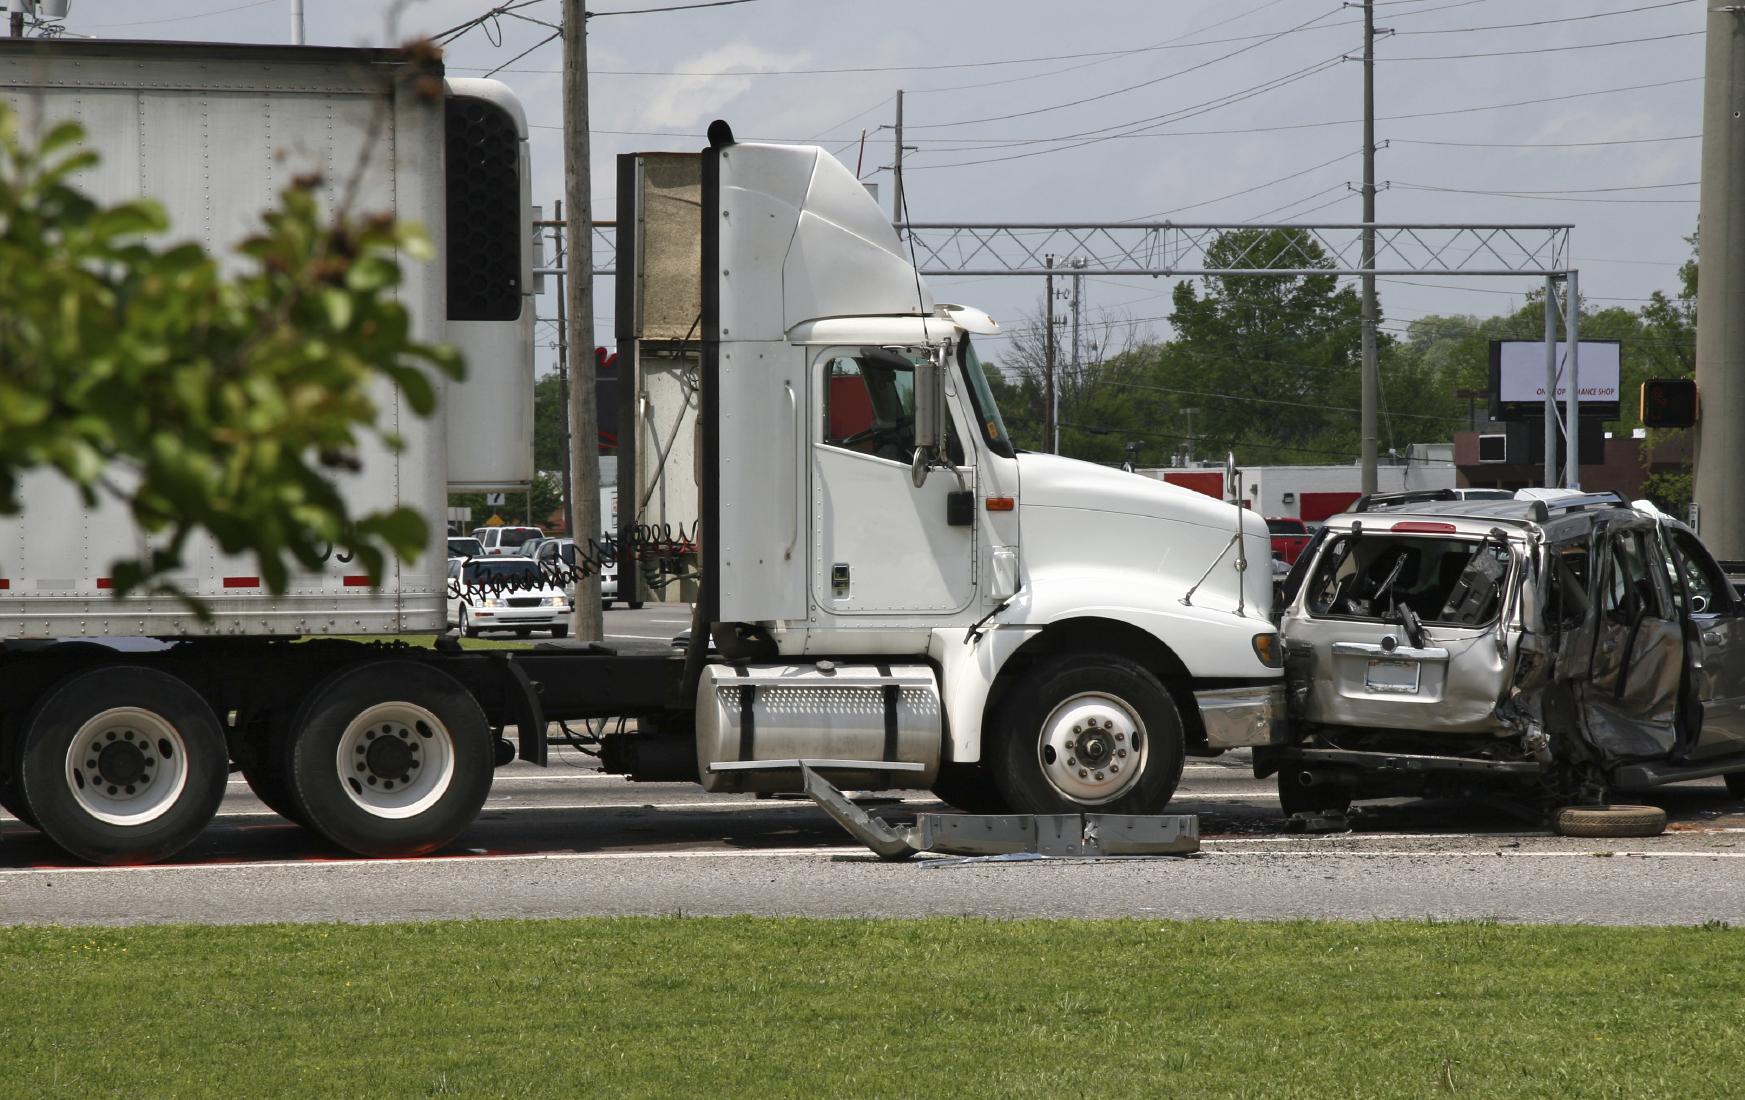 Truck Accident Attorney Dallas